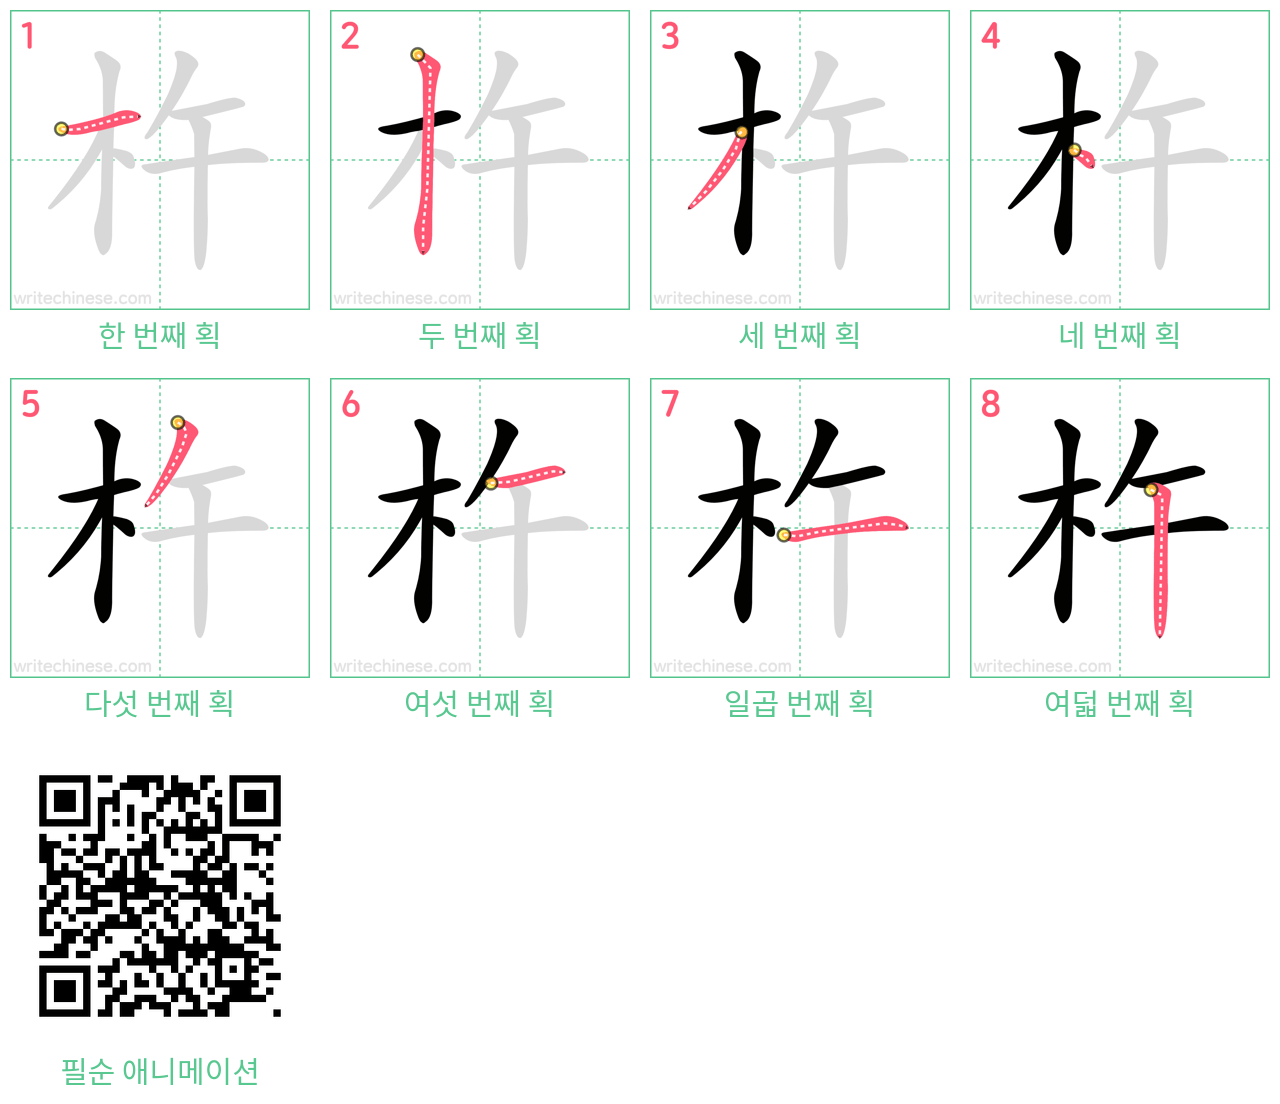 杵 step-by-step stroke order diagrams